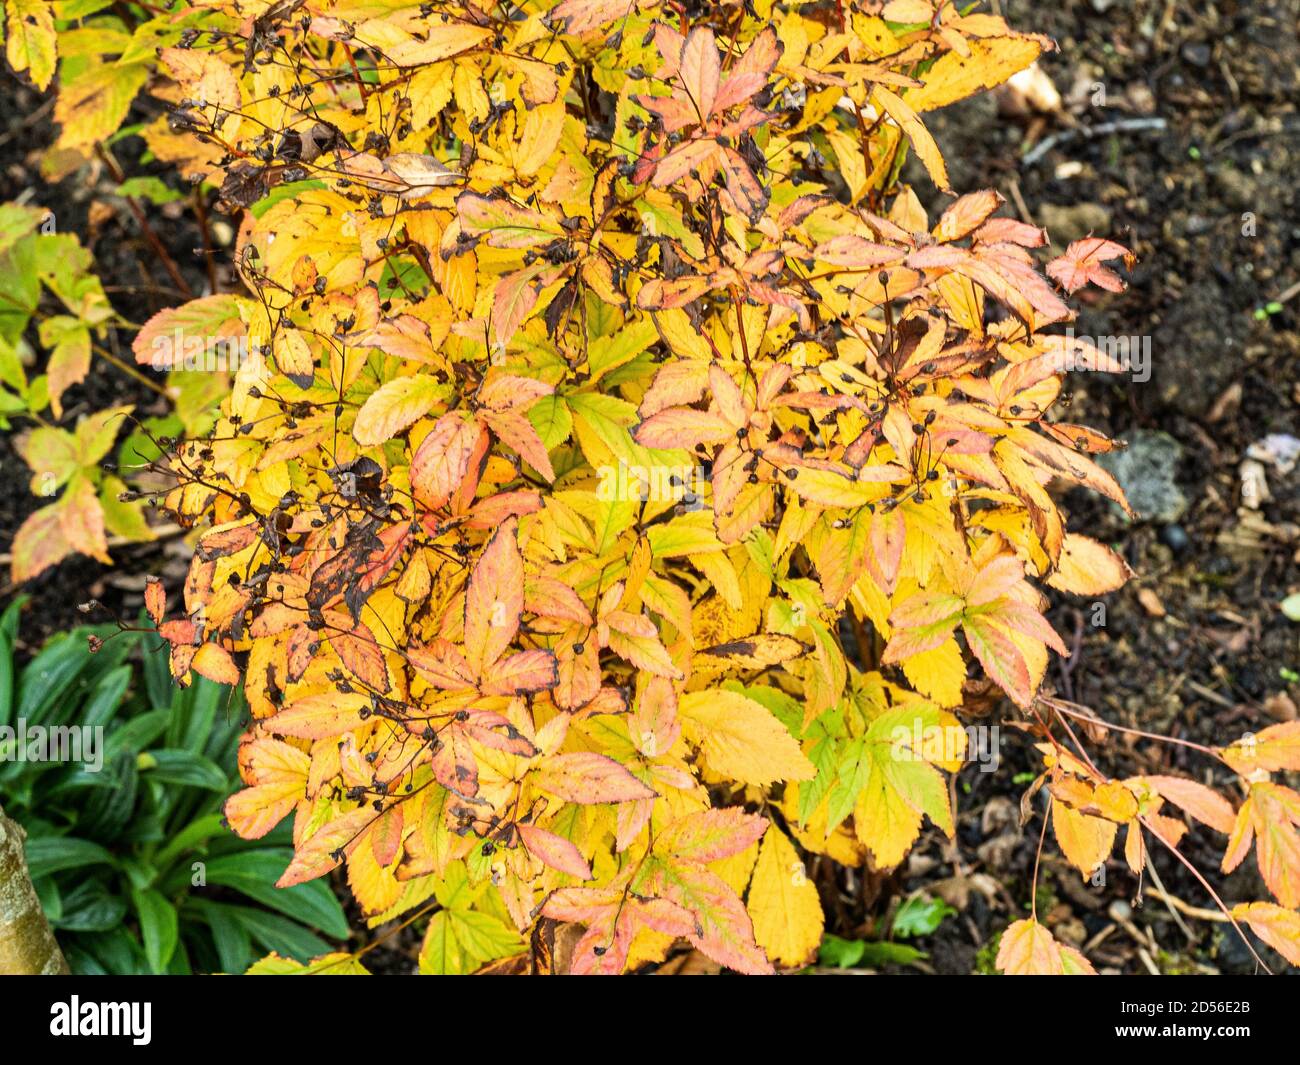 The golden autumn foliage colour of the perennial Gillenia trifoliata Stock Photo